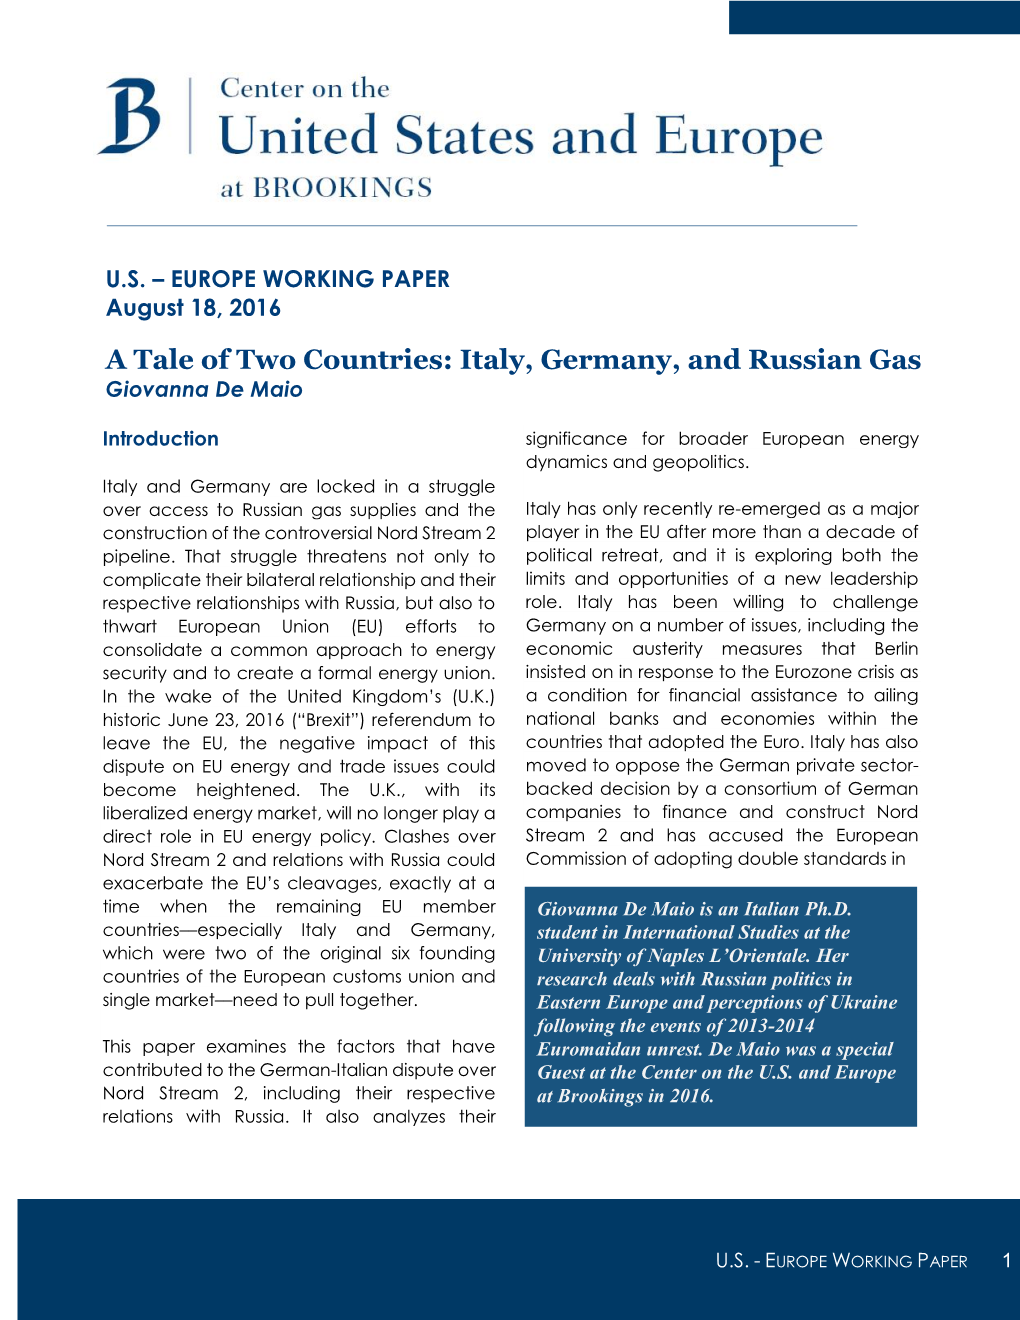 Italy, Germany, and Russian Gas Giovanna De Maio